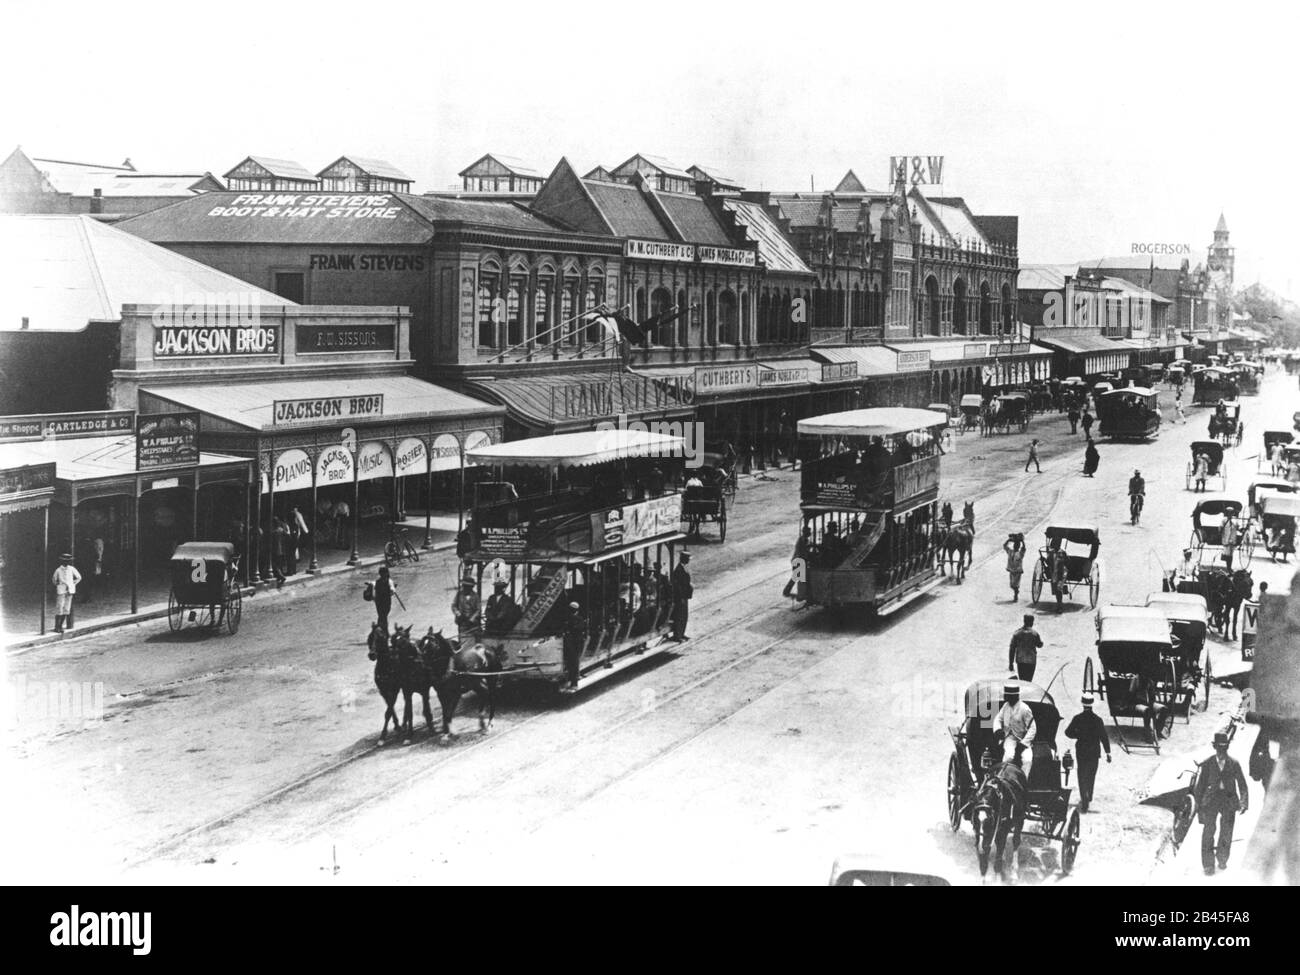 Straßenbahn und Pferdekutsche, West Street, Durban, KwaZulu Natal, Südafrika, 1895, alter Jahrgang 1800s Bild Stockfoto